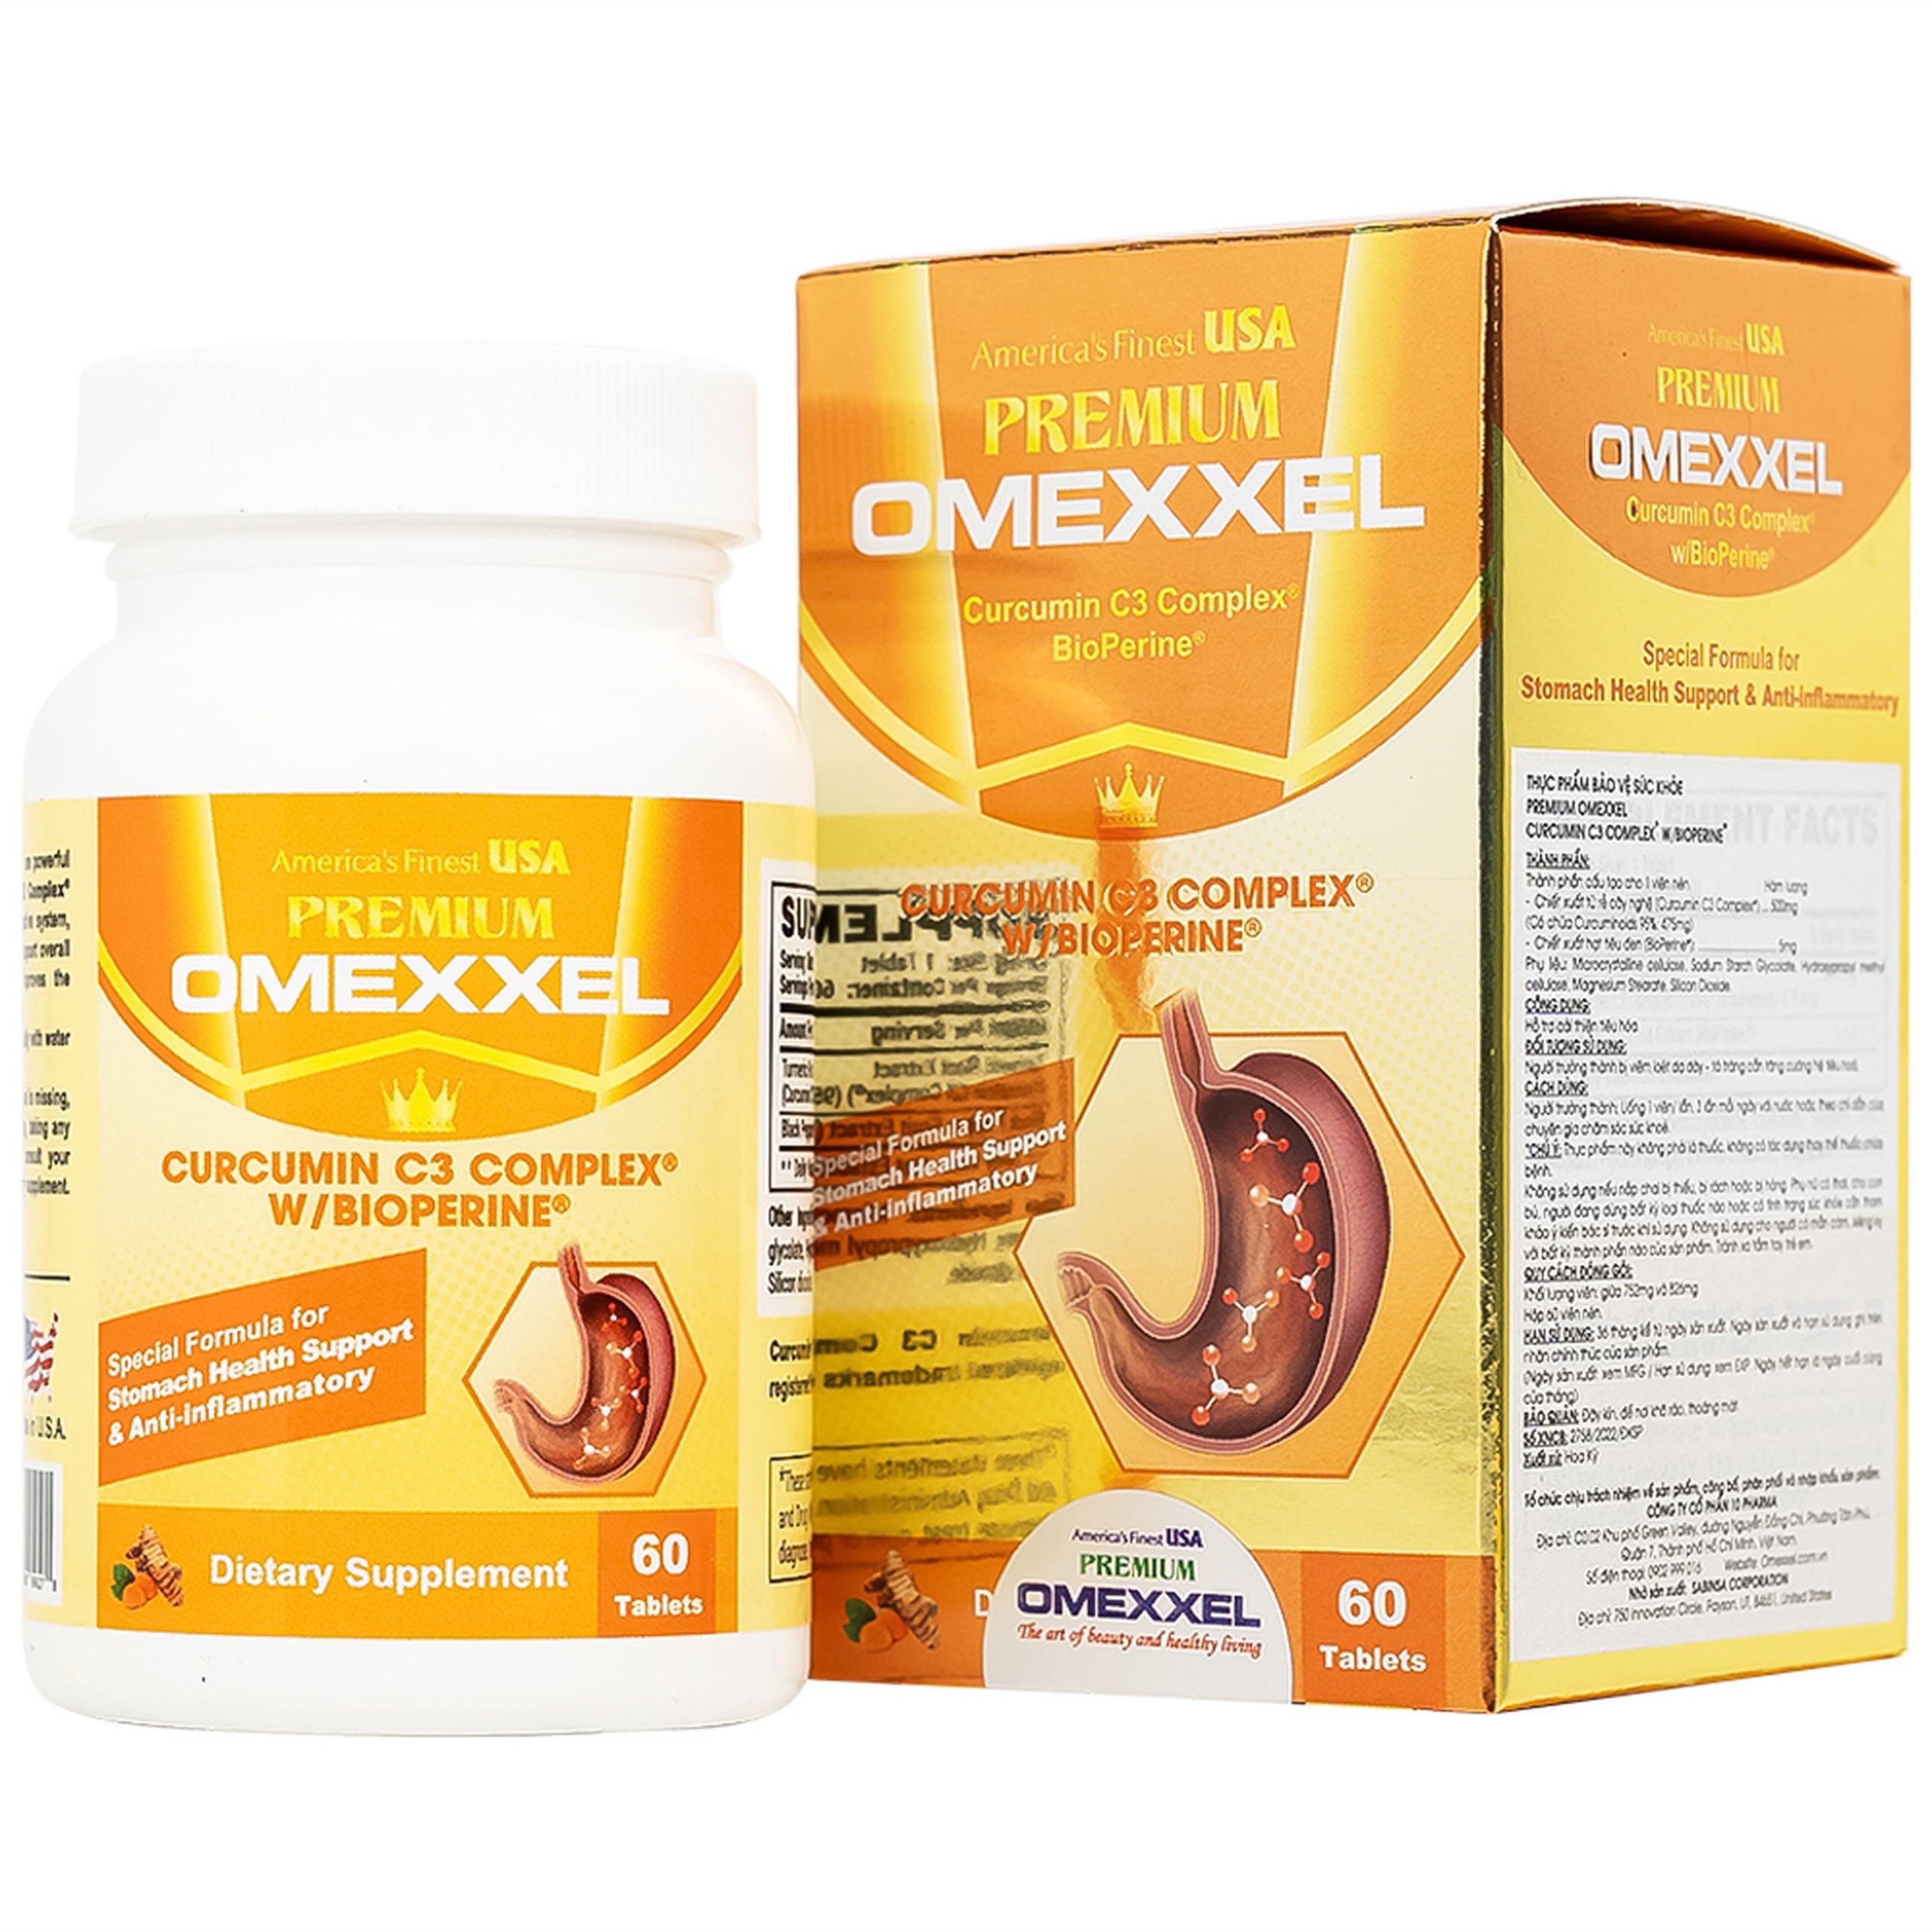 Viên uống Premium Omexxel Curcumin C3 Complex W/Bioperine hỗ trợ cải thiện tiêu hóa (60 viên)